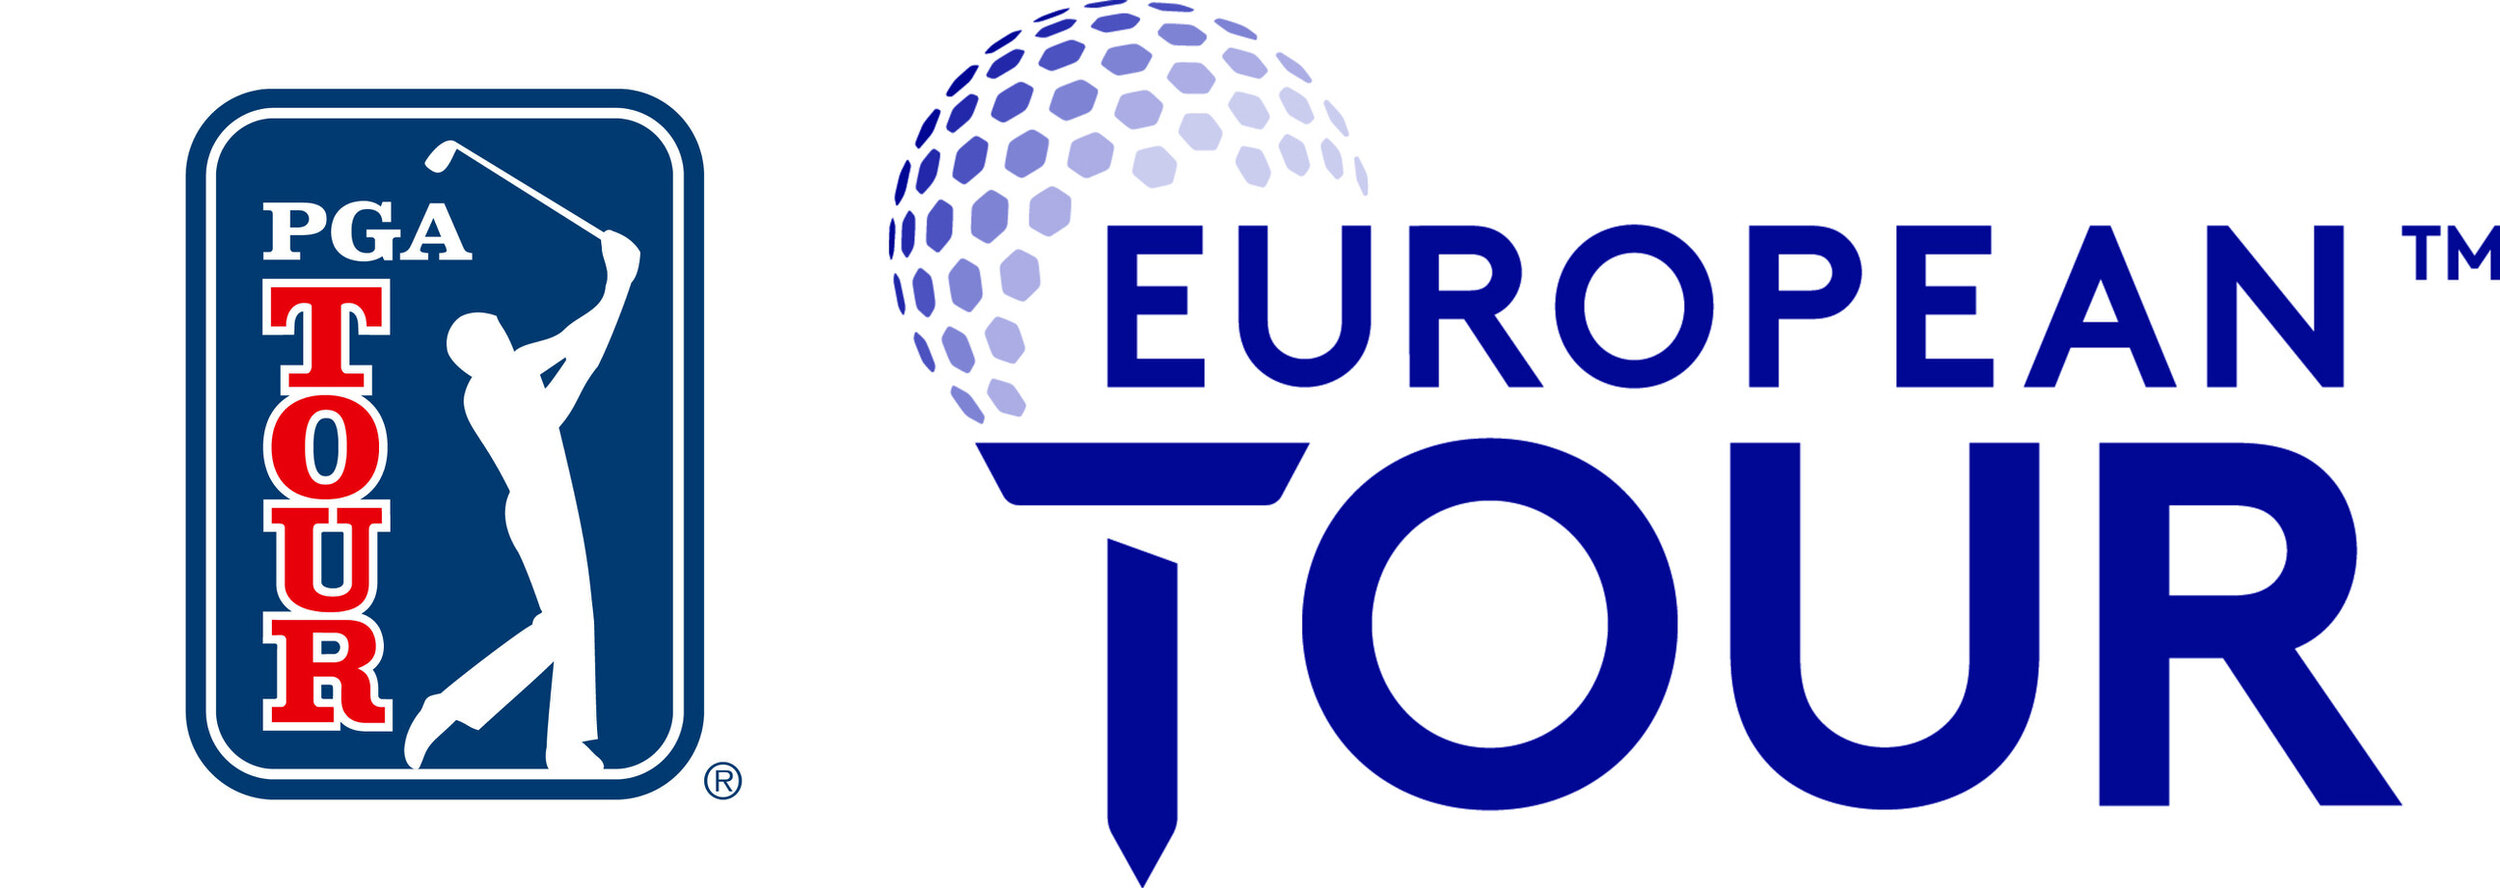 European Tour announces full 2020 schedule - Golfingindian